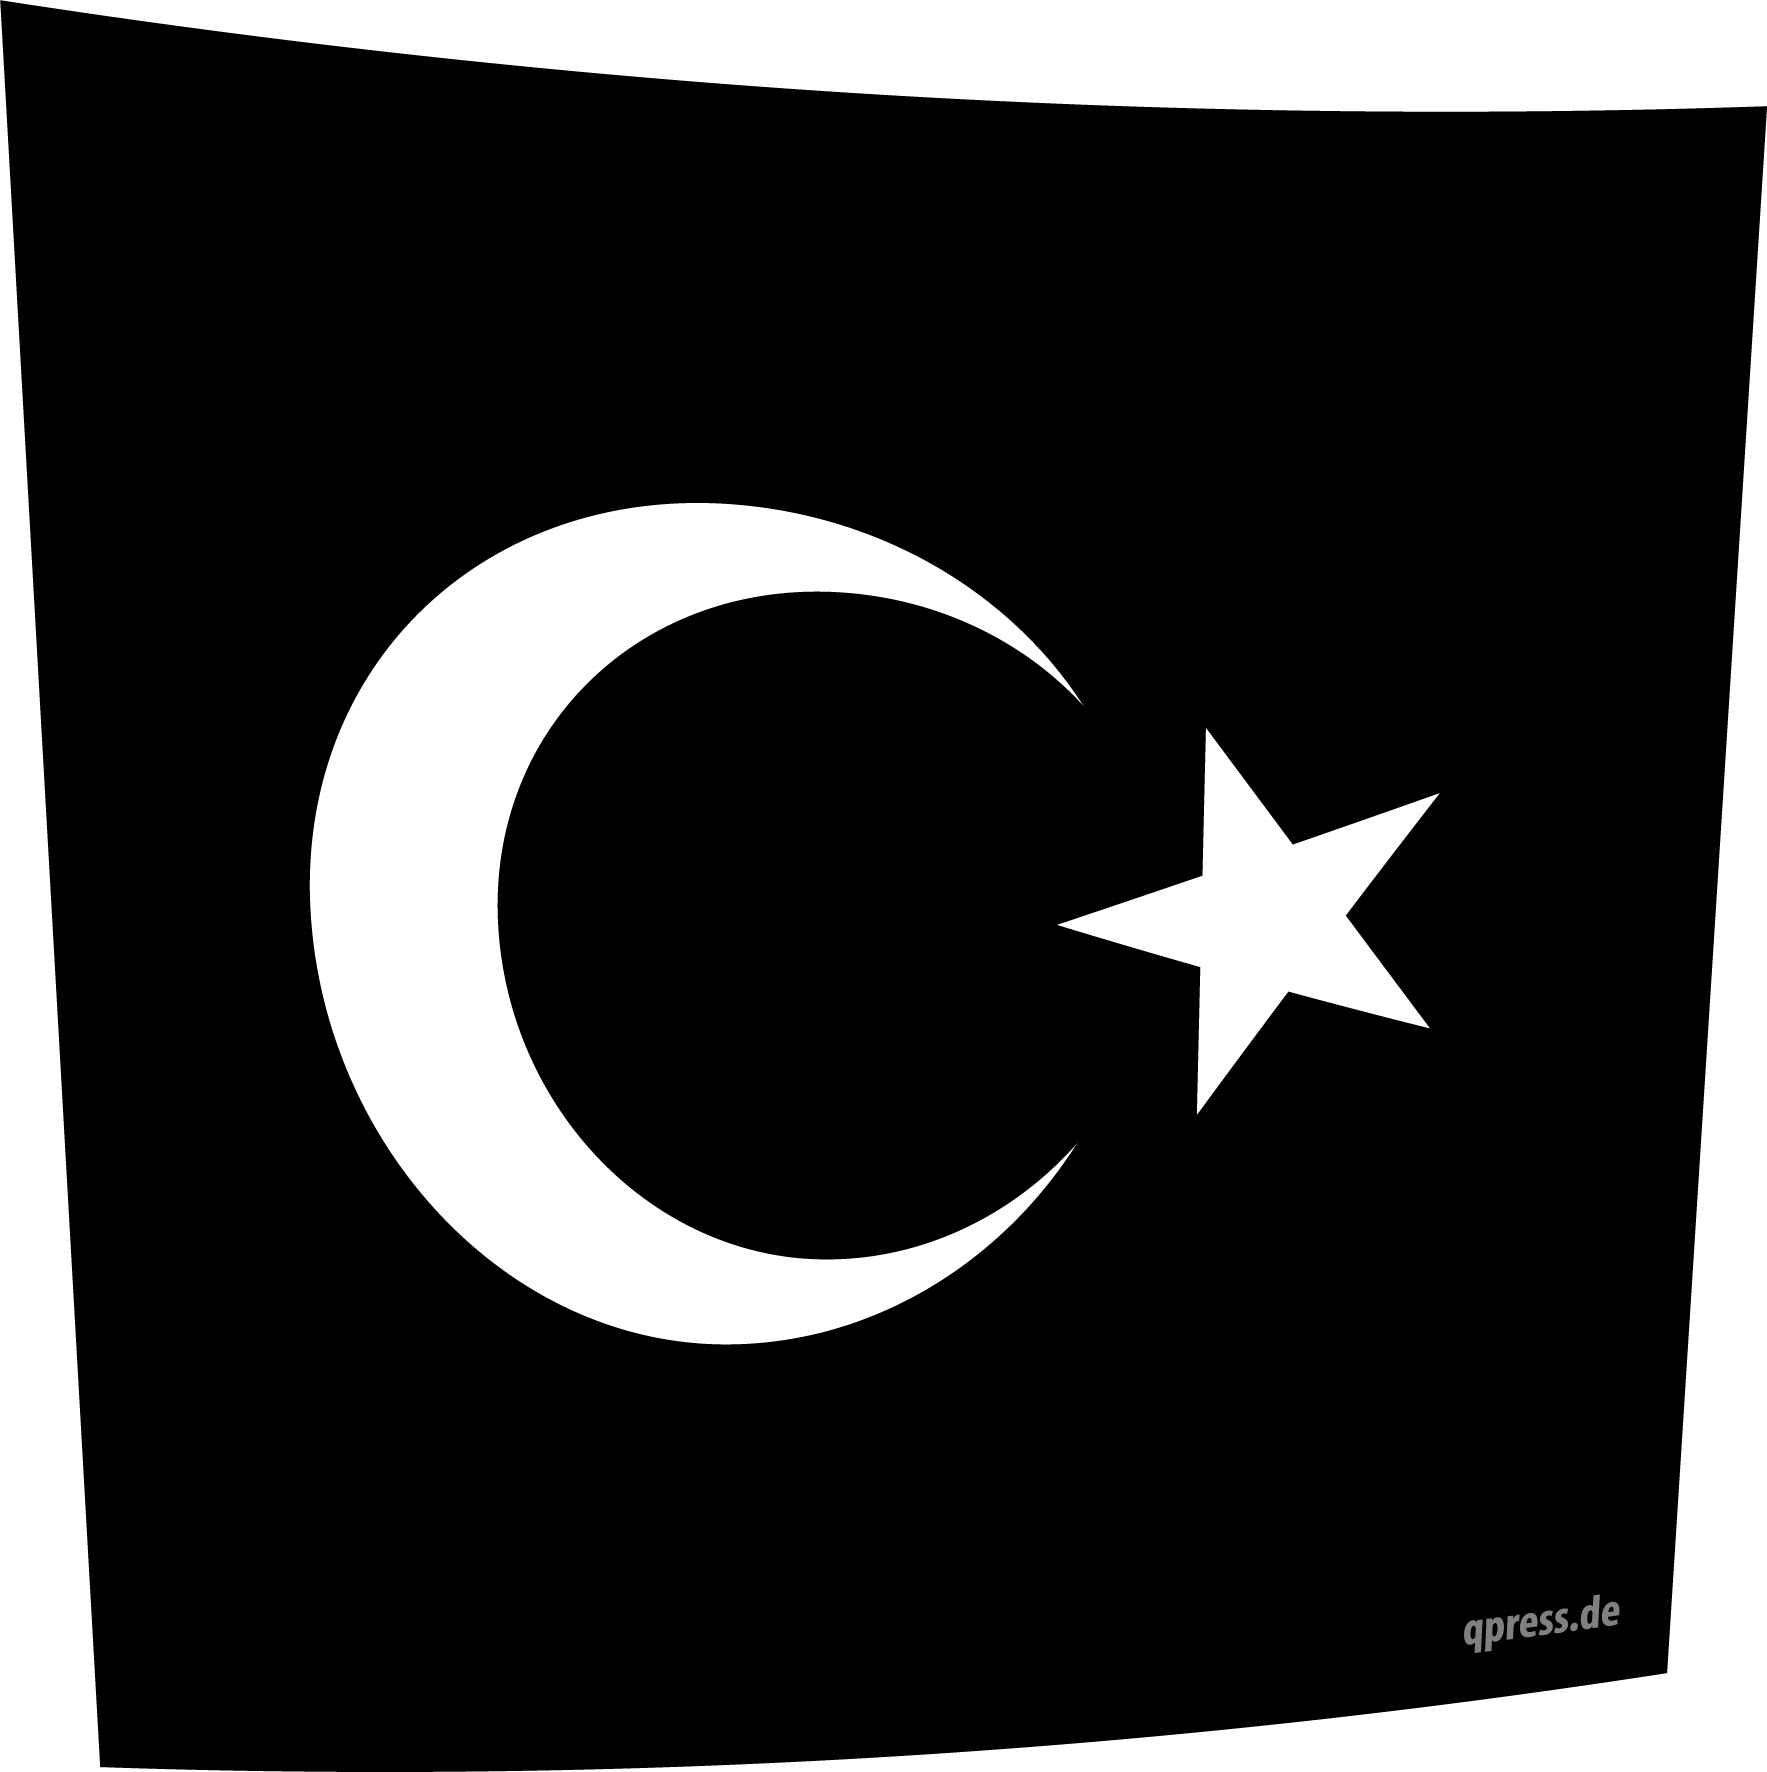 flag_of_is_turkey_neue_flagge_der_tuerkei_unter_erdogan_qpress